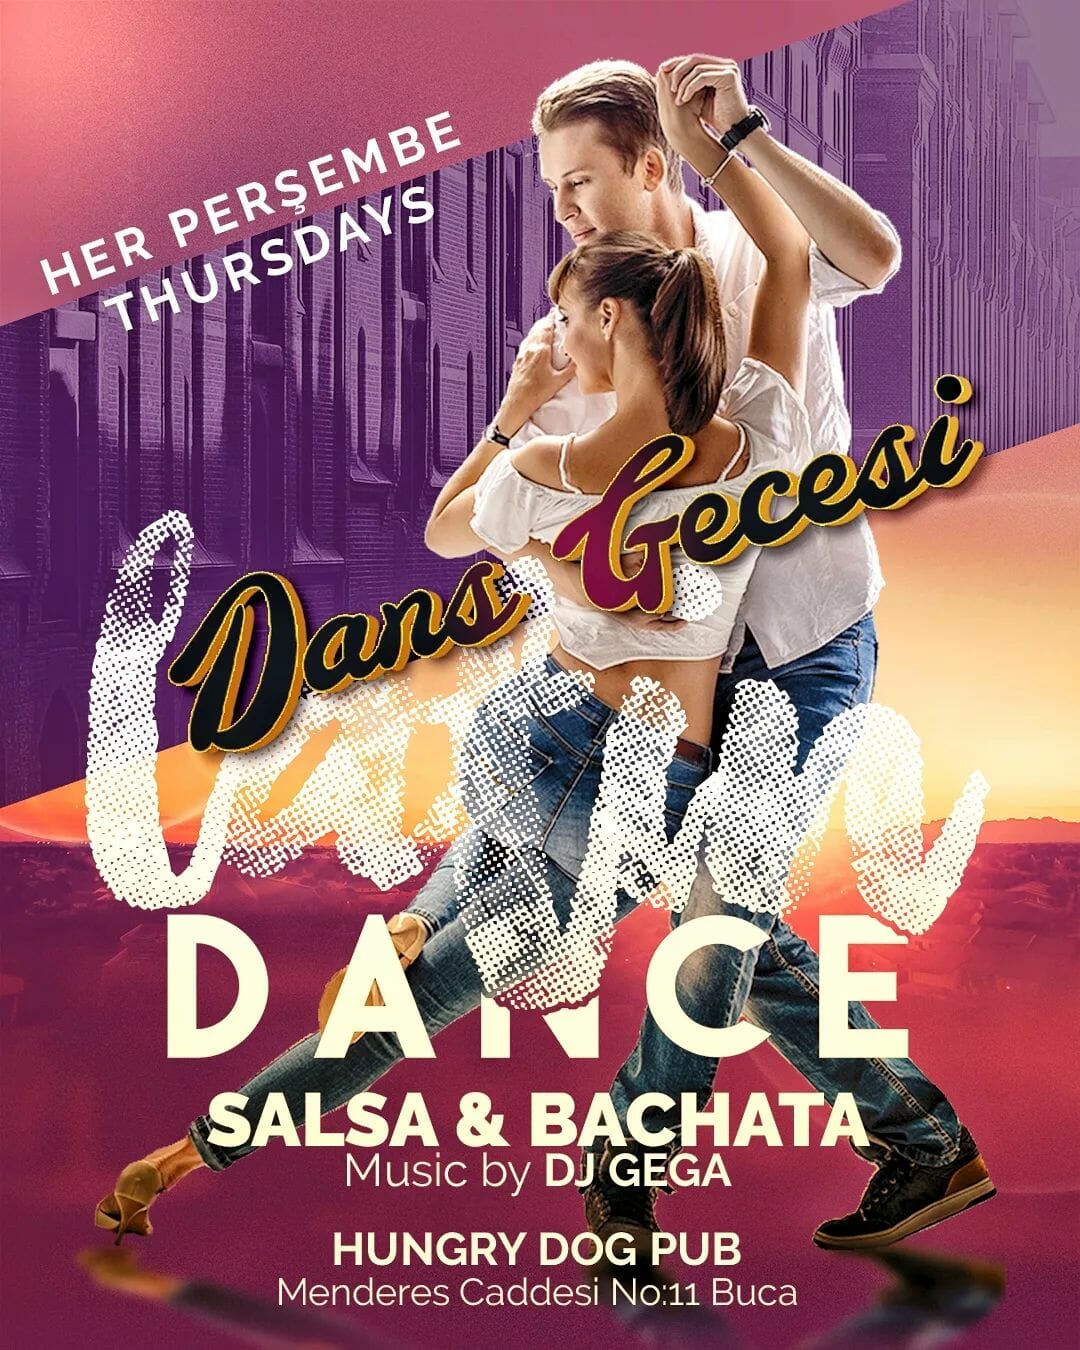 Dans Partnerim - Salsa ve bachata dansının yer aldığı bir dans etkinliği broşürü.